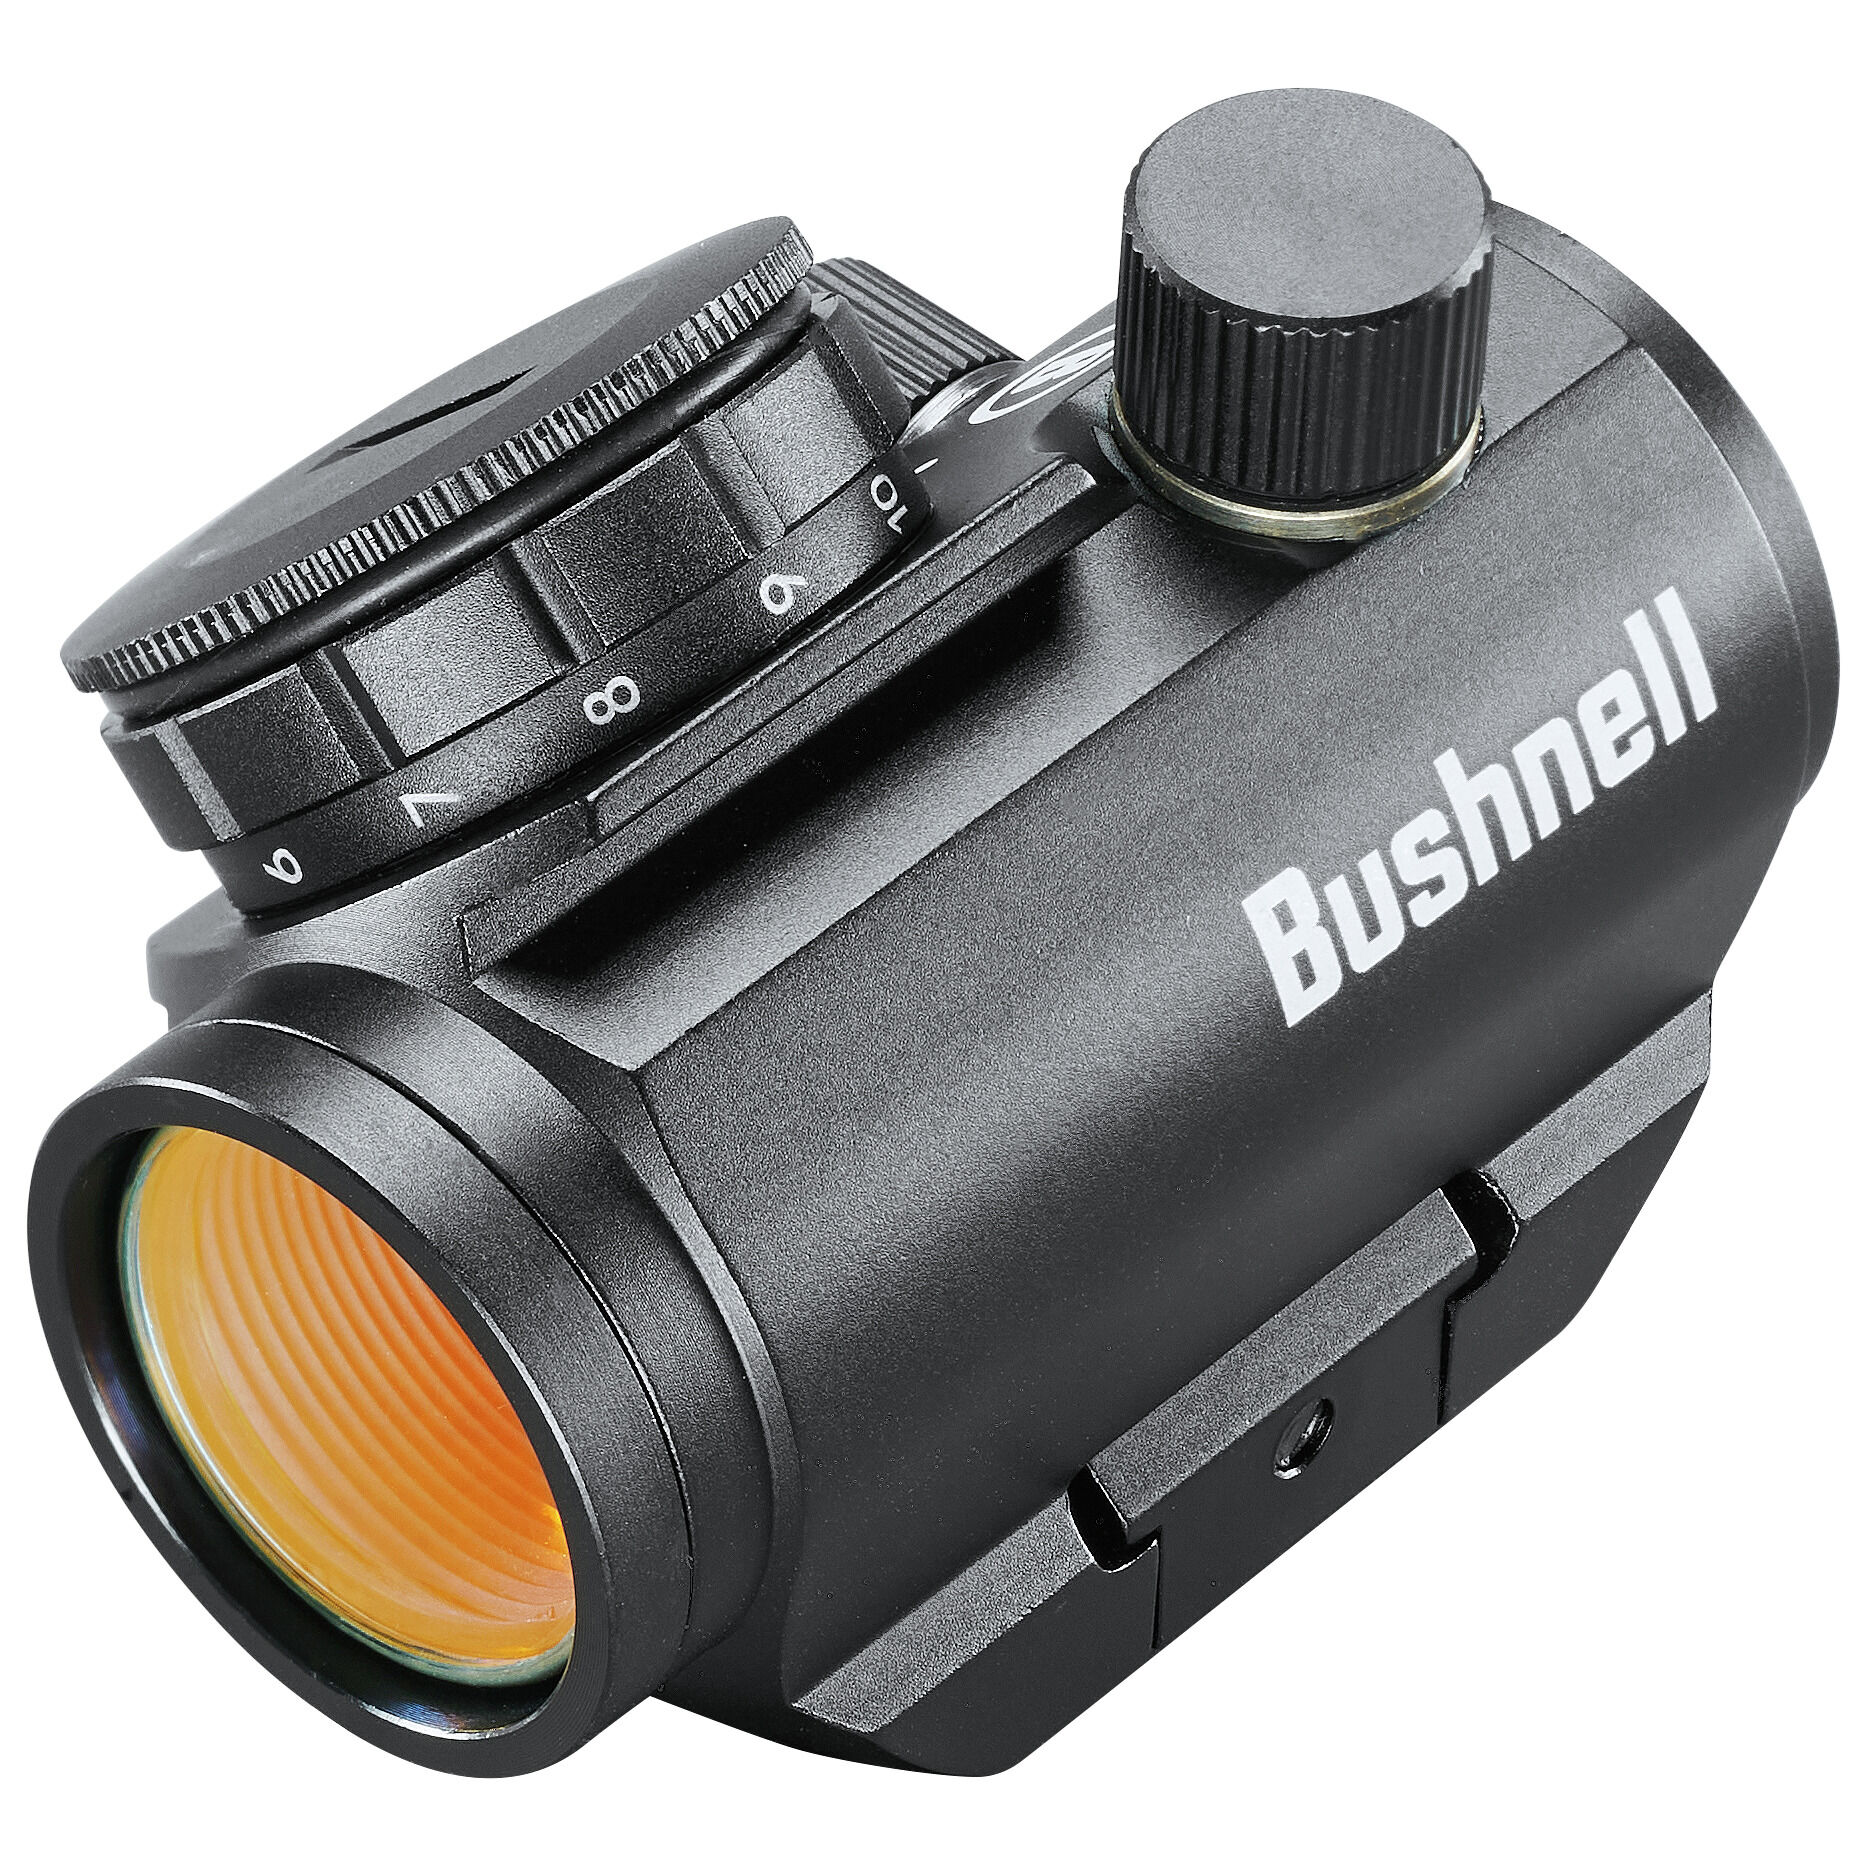 Trophy TRS-25 Red Dot Sight | Bushnell